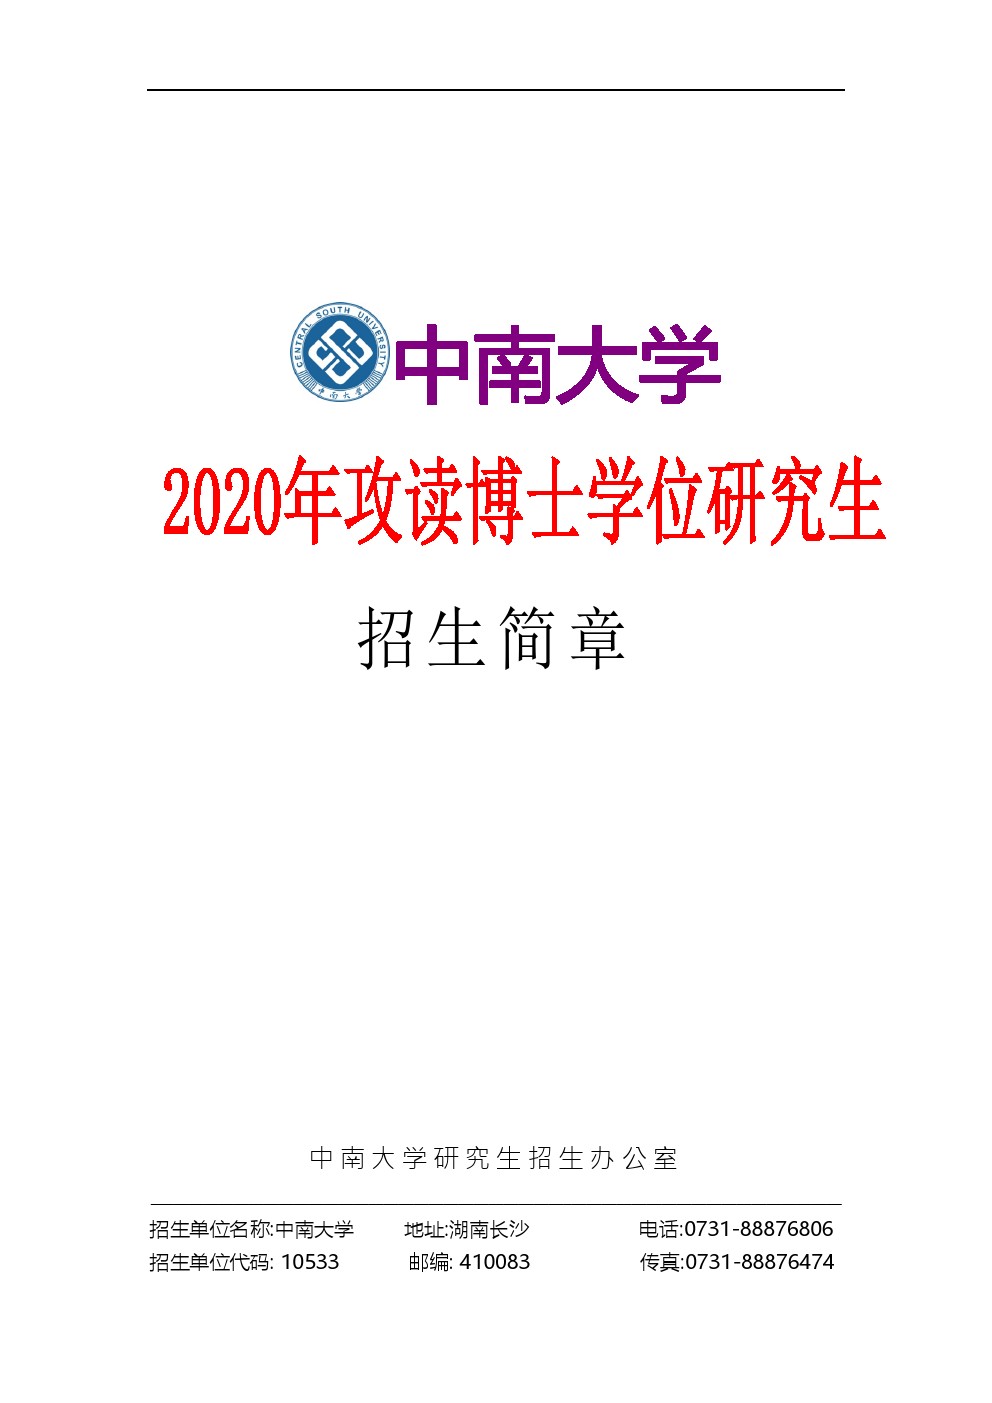 中南大学2020年博士研究生招生简章